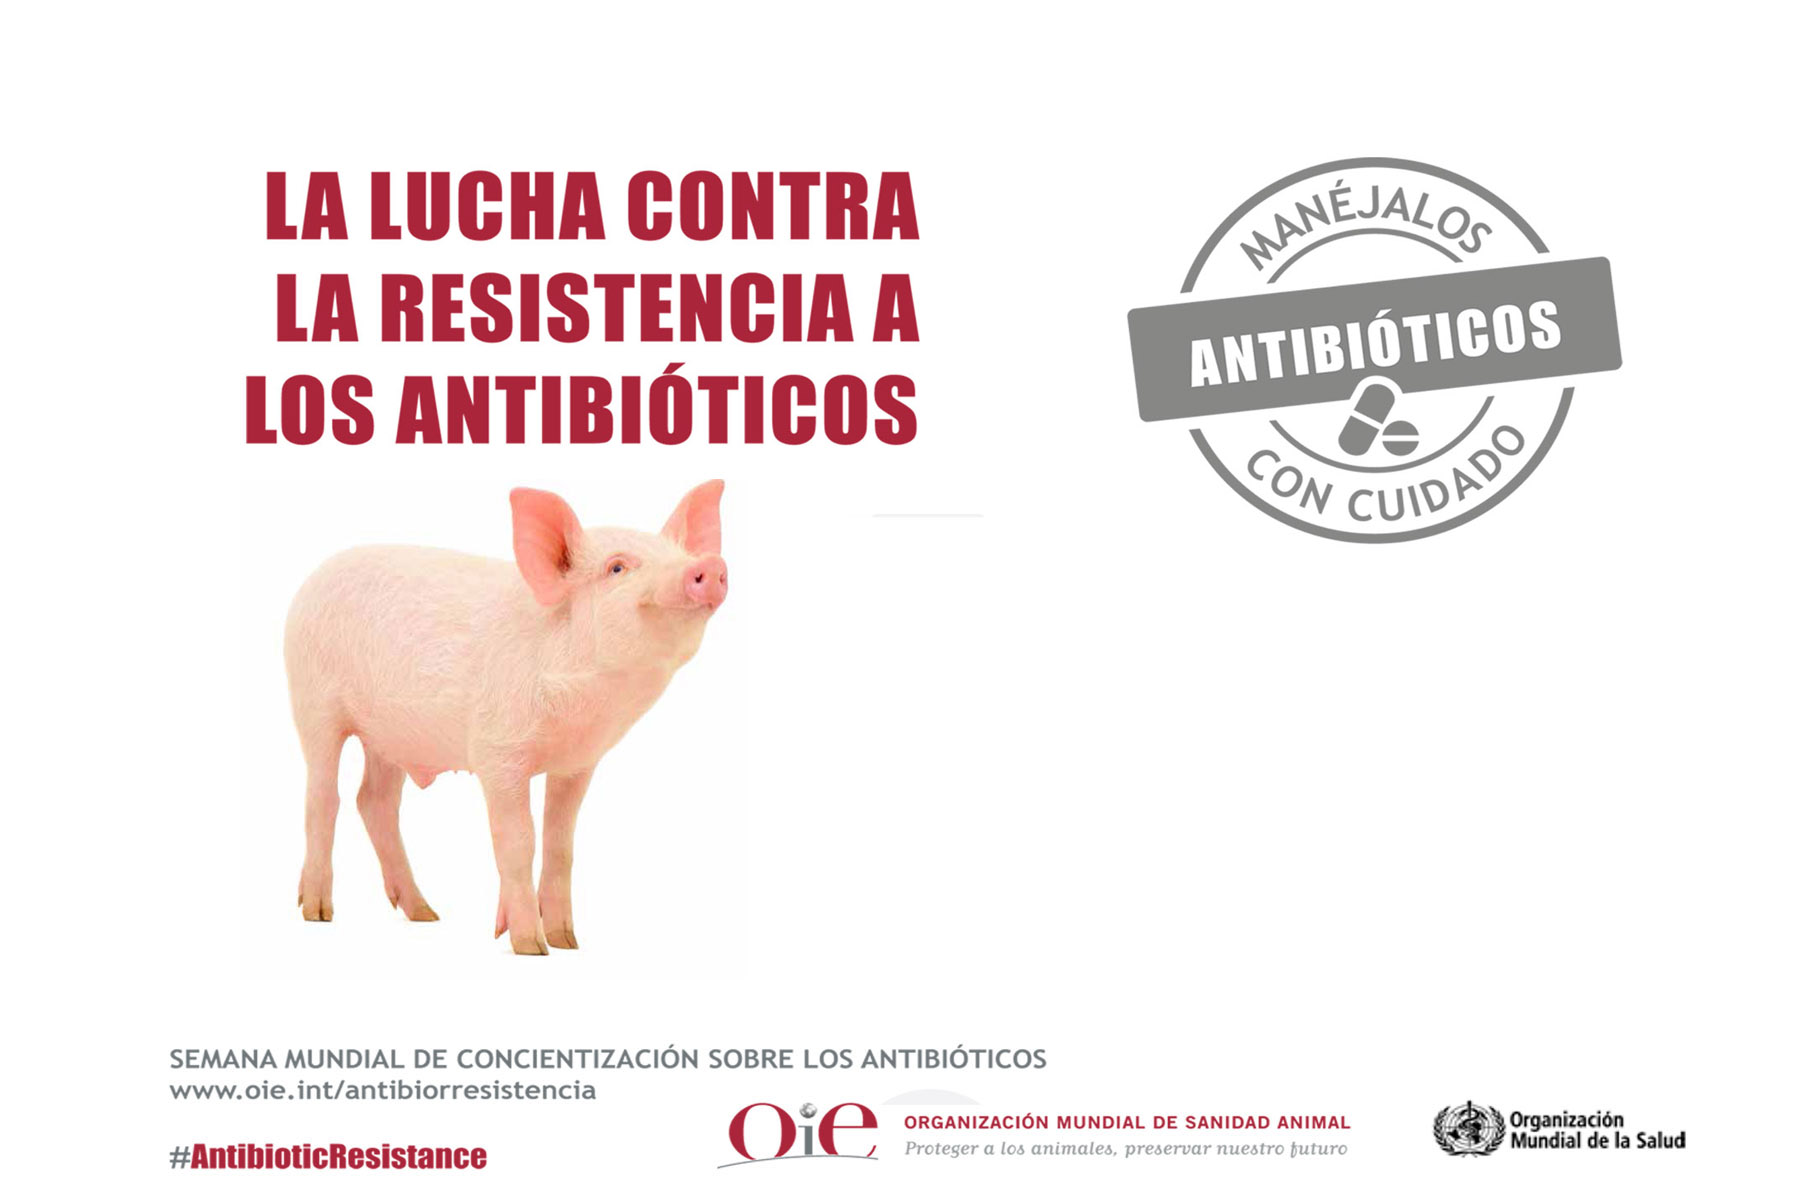 Los antibióticos son un recurso básico para la salud humana, la sanidad y el bienestar animal.